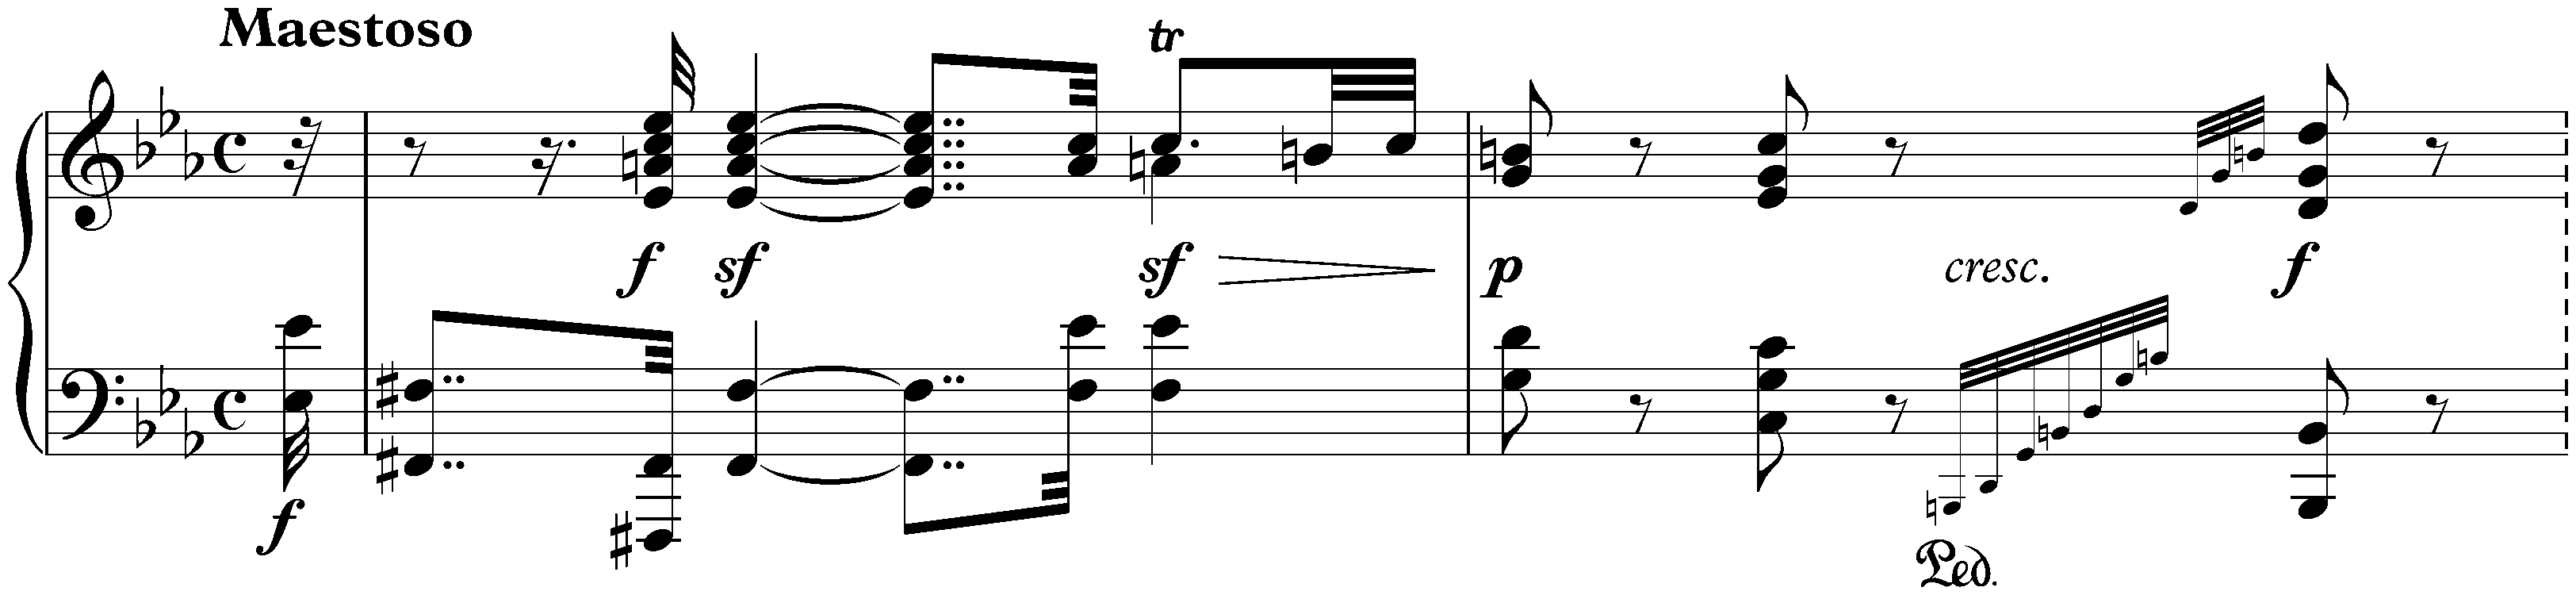 Sonata no. 32 in C minor, op. 111; 1. Maestoso – Allegro con brio ed appassionato